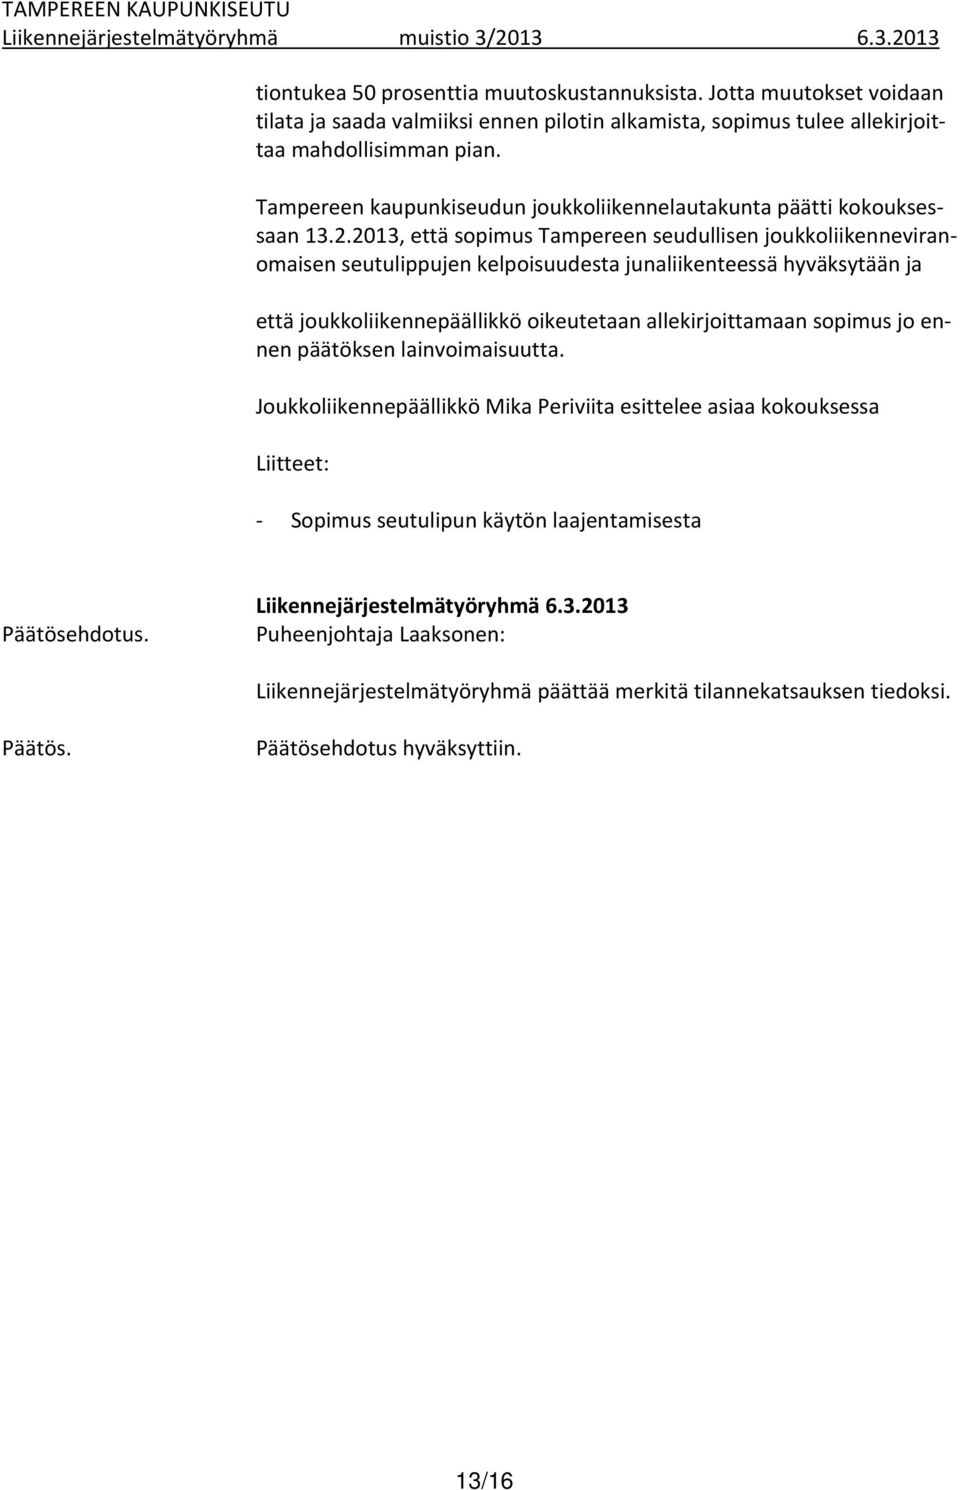 2013, että sopimus Tampereen seudullisen joukkoliikenneviranomaisen seutulippujen kelpoisuudesta junaliikenteessä hyväksytään ja että joukkoliikennepäällikkö oikeutetaan allekirjoittamaan sopimus